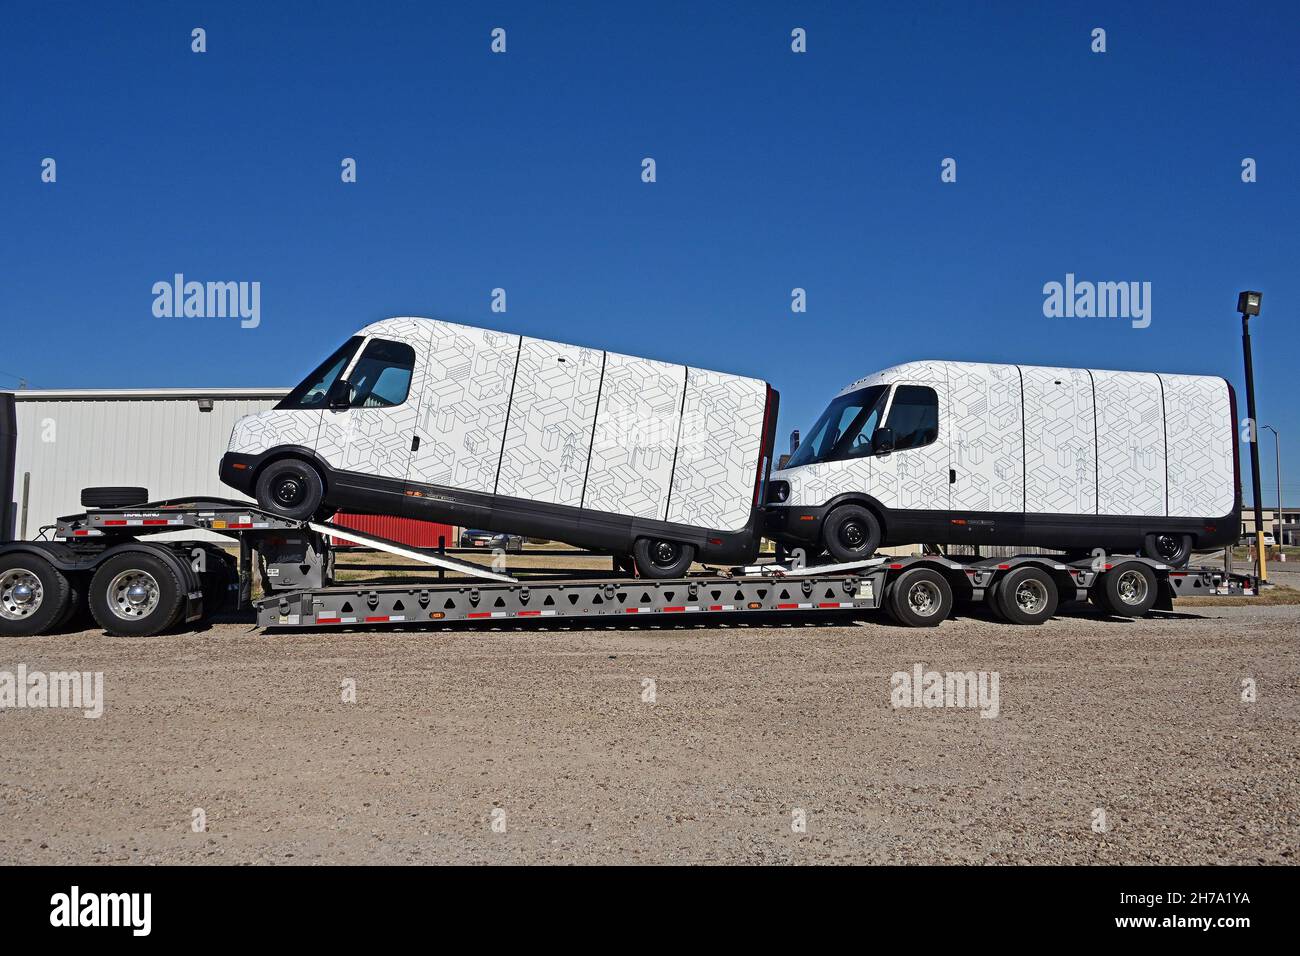 Zwei brandneue Modelle EDV 500 Rivian Electric Delivery Vans (EDV) sind  Teil des Flottenauftrags für Amazon auf der Rückseite eines im Knights Inn  Motel geparkten Transport-Tieflader, während sie vom Produktionswerk im  normalen